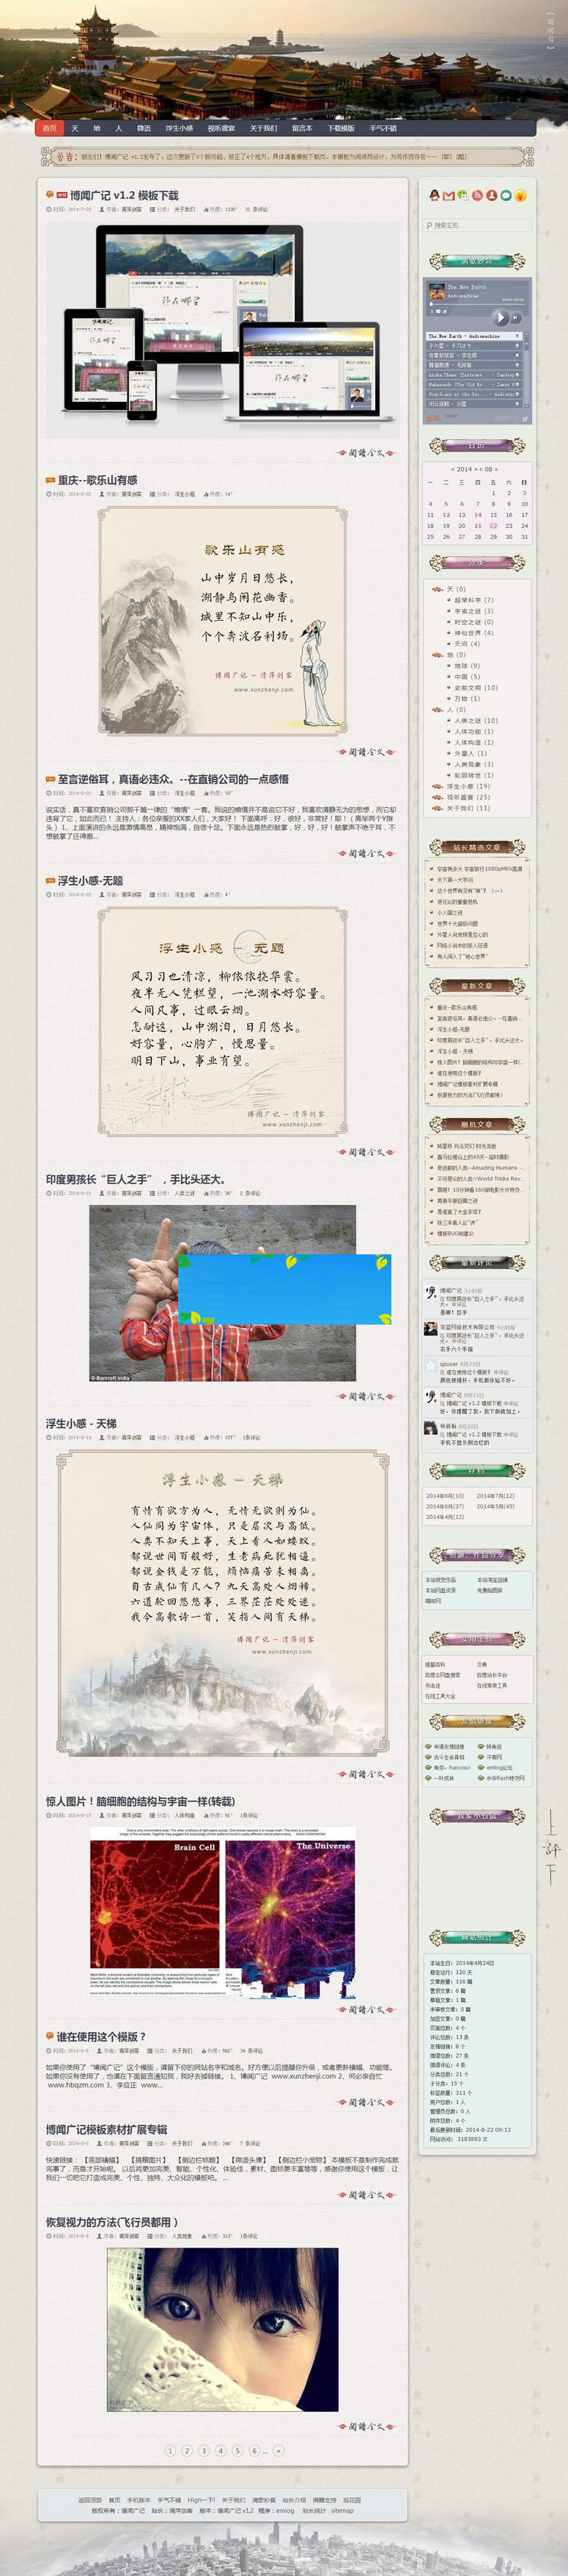 图片[1]-古典中国风大情景相应式emlog私家博客主题模板-零度空间